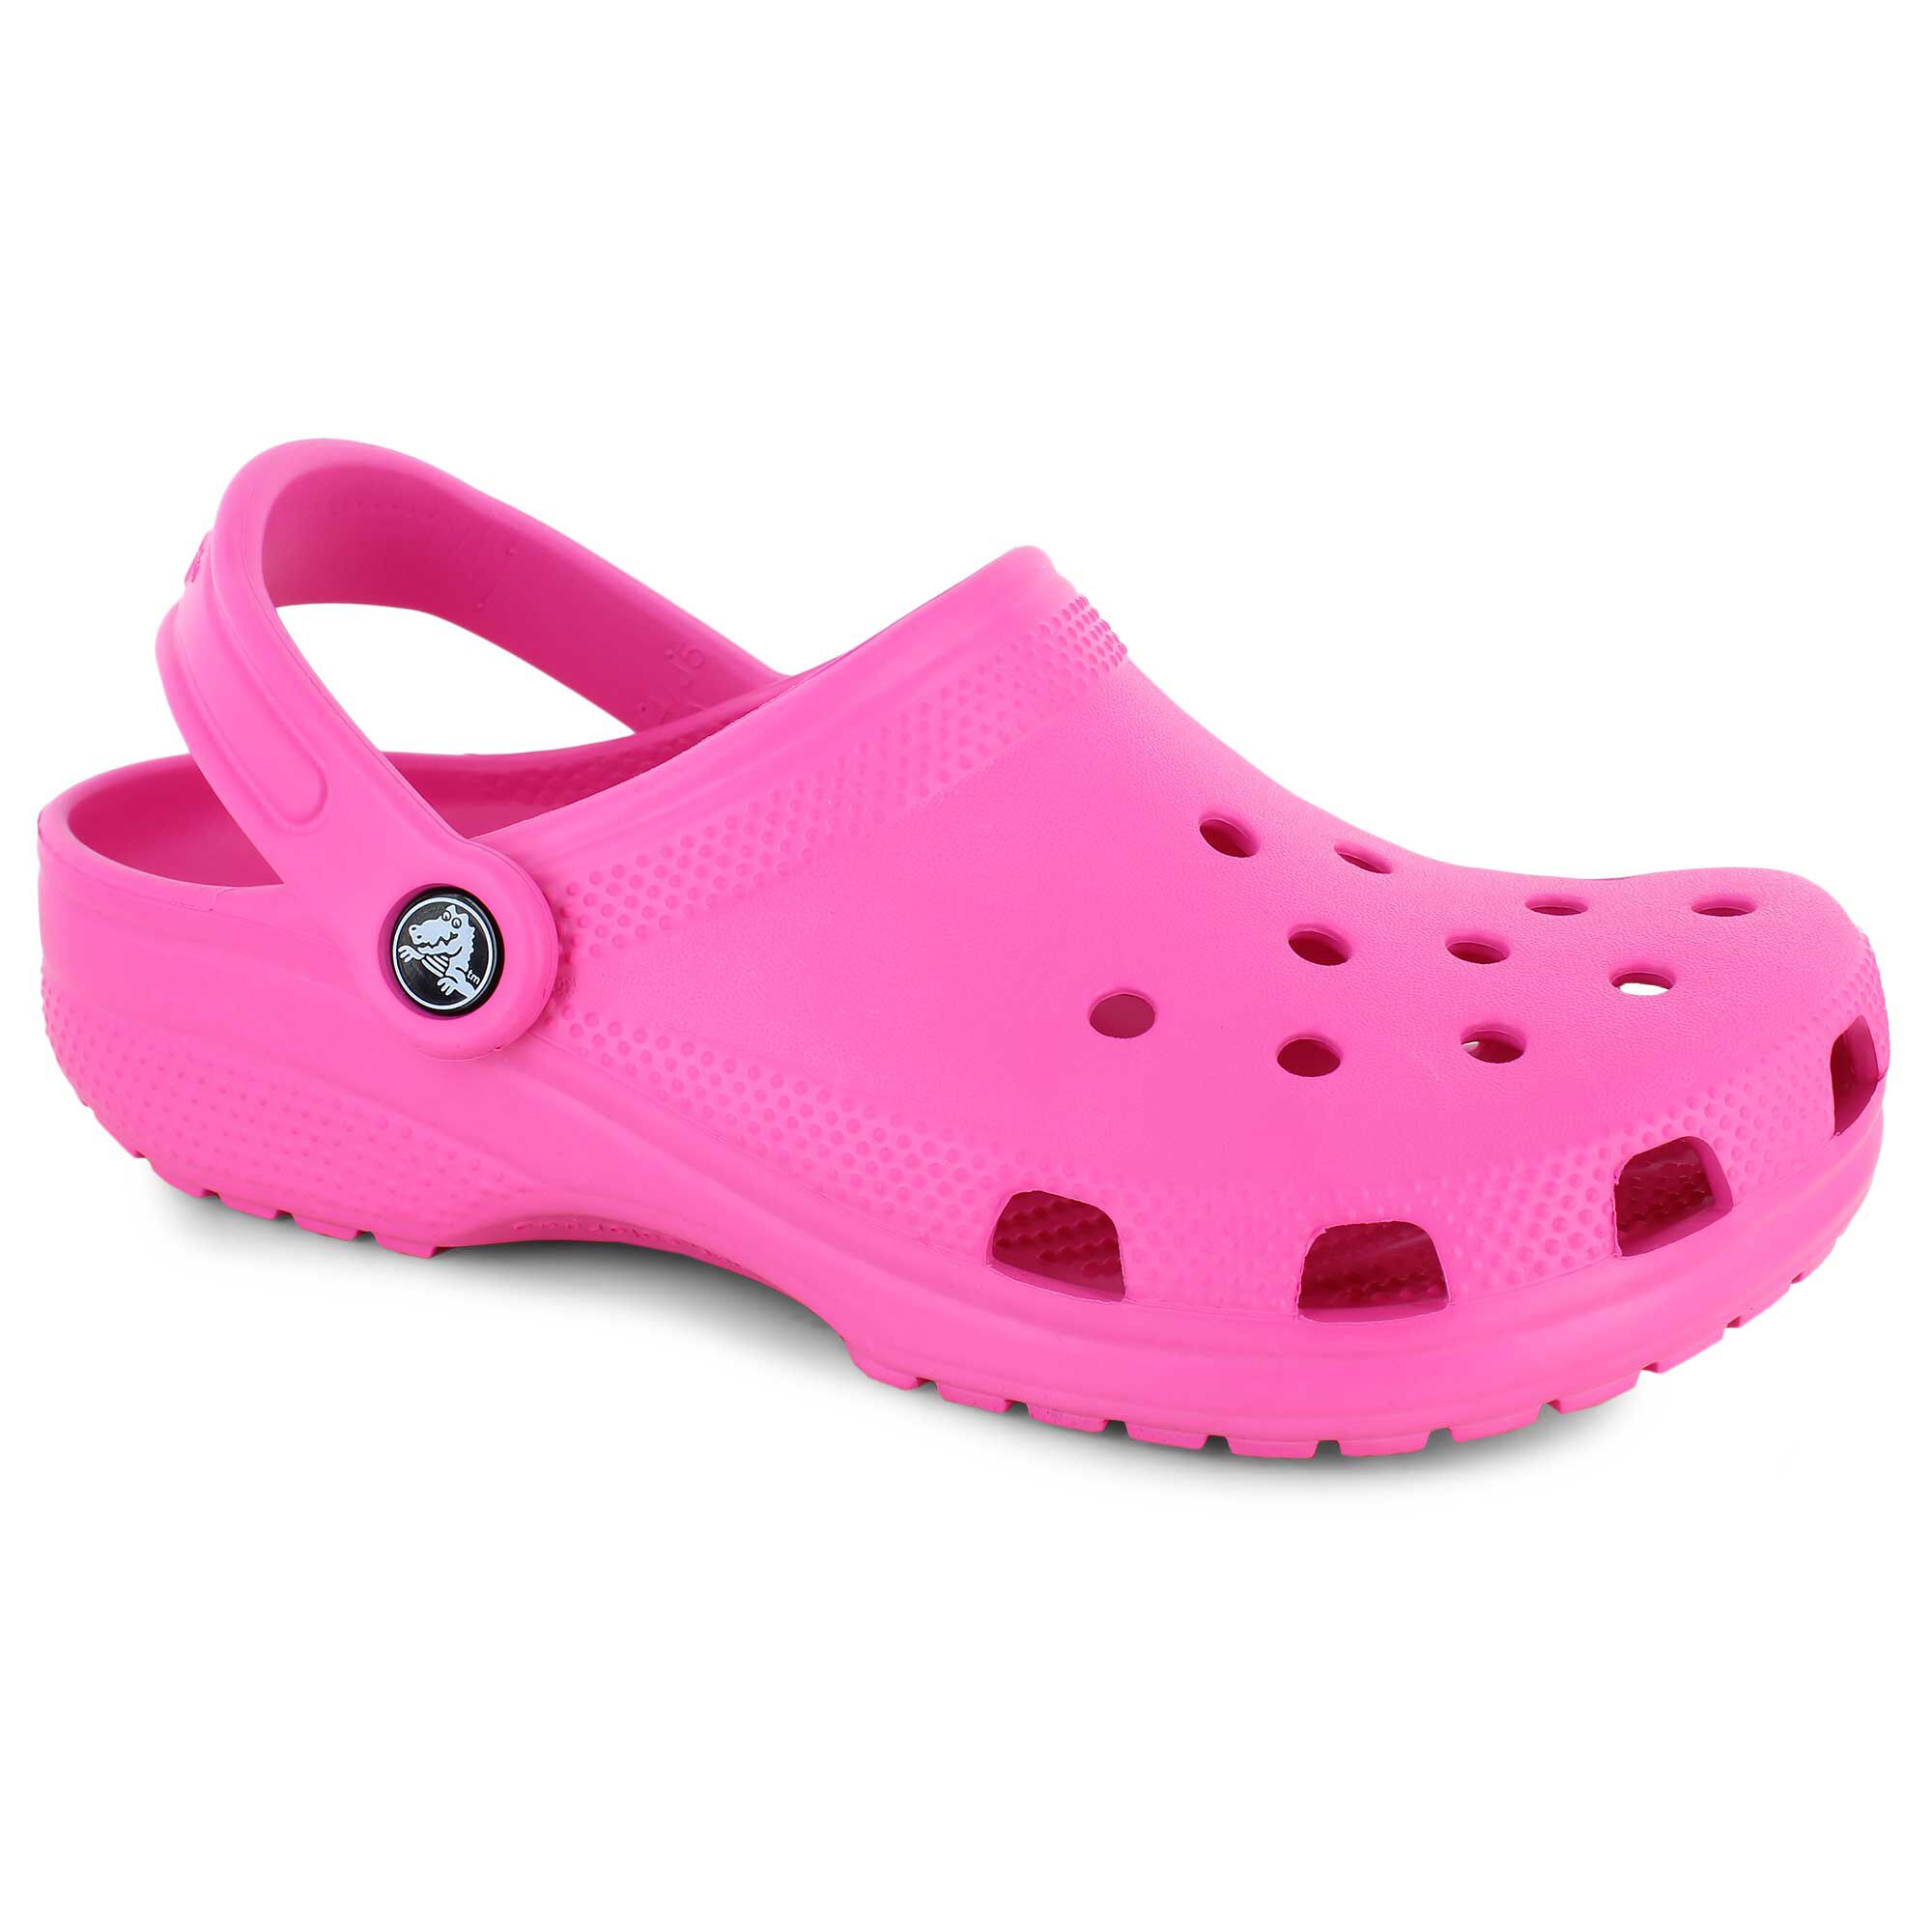 crocs at shoe show